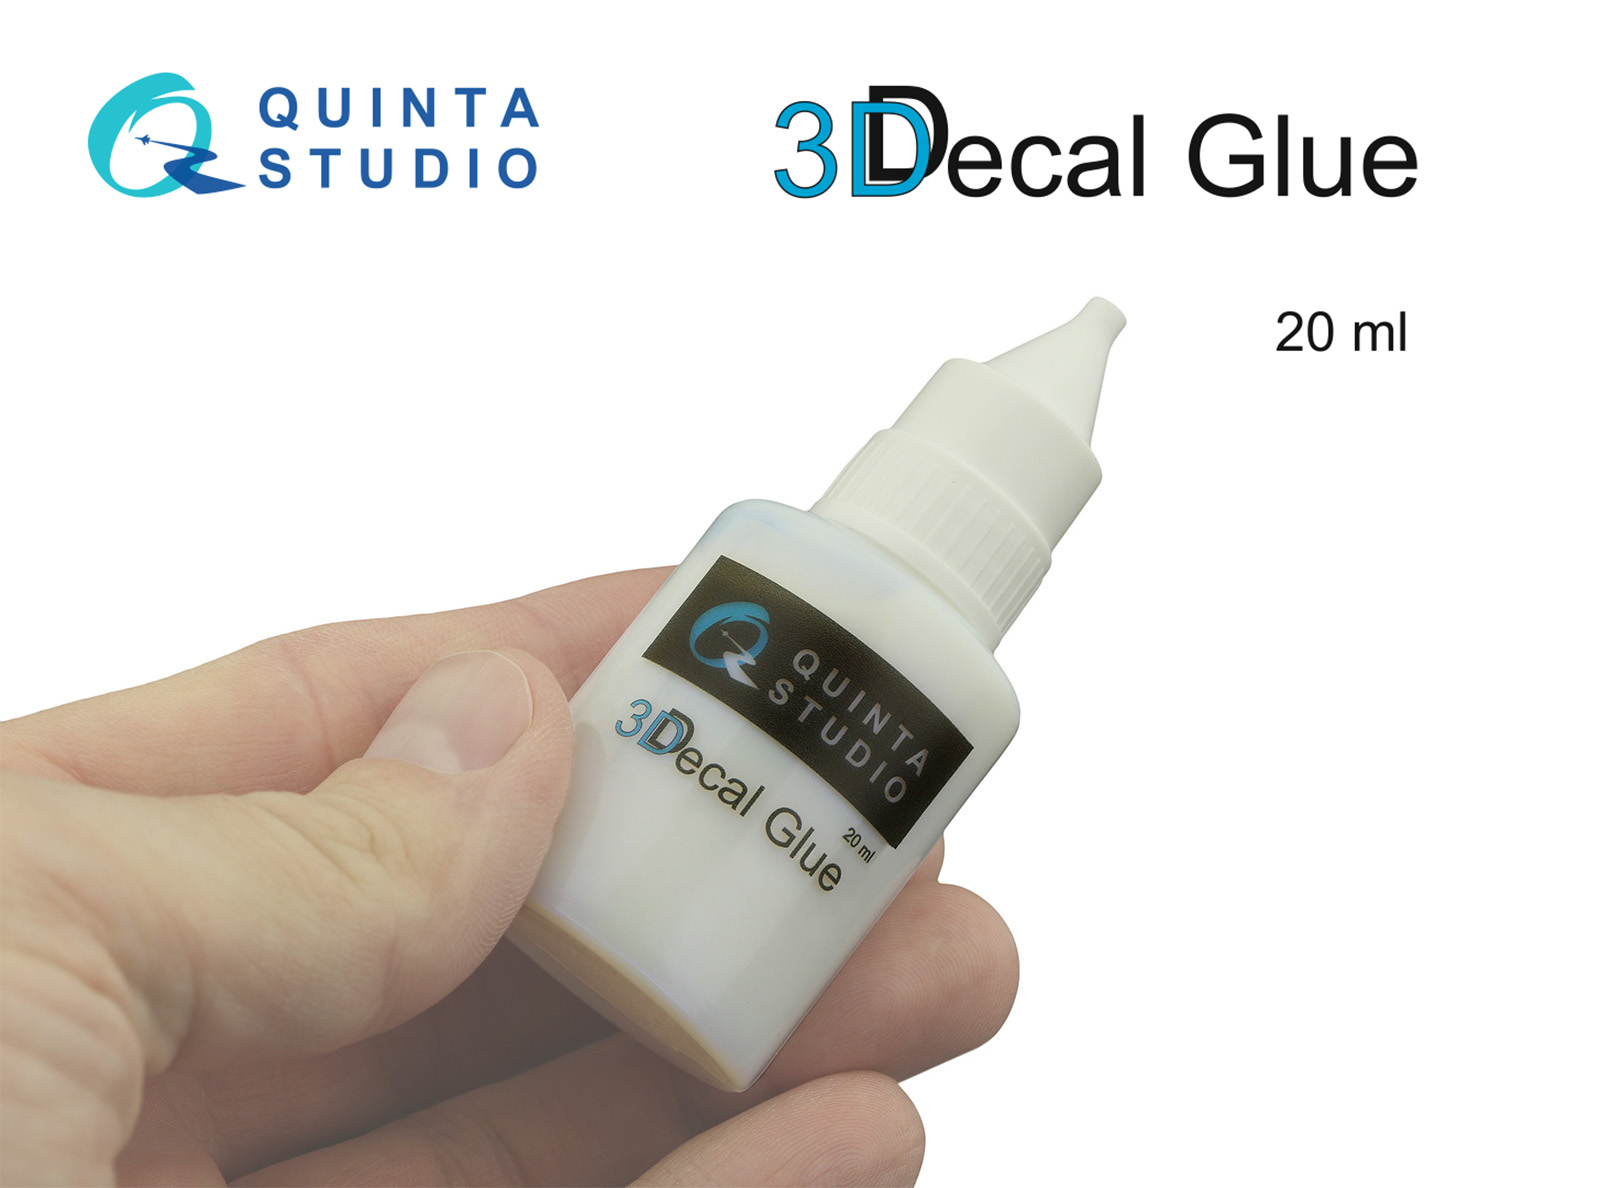 3D Decal Glue 20 ml